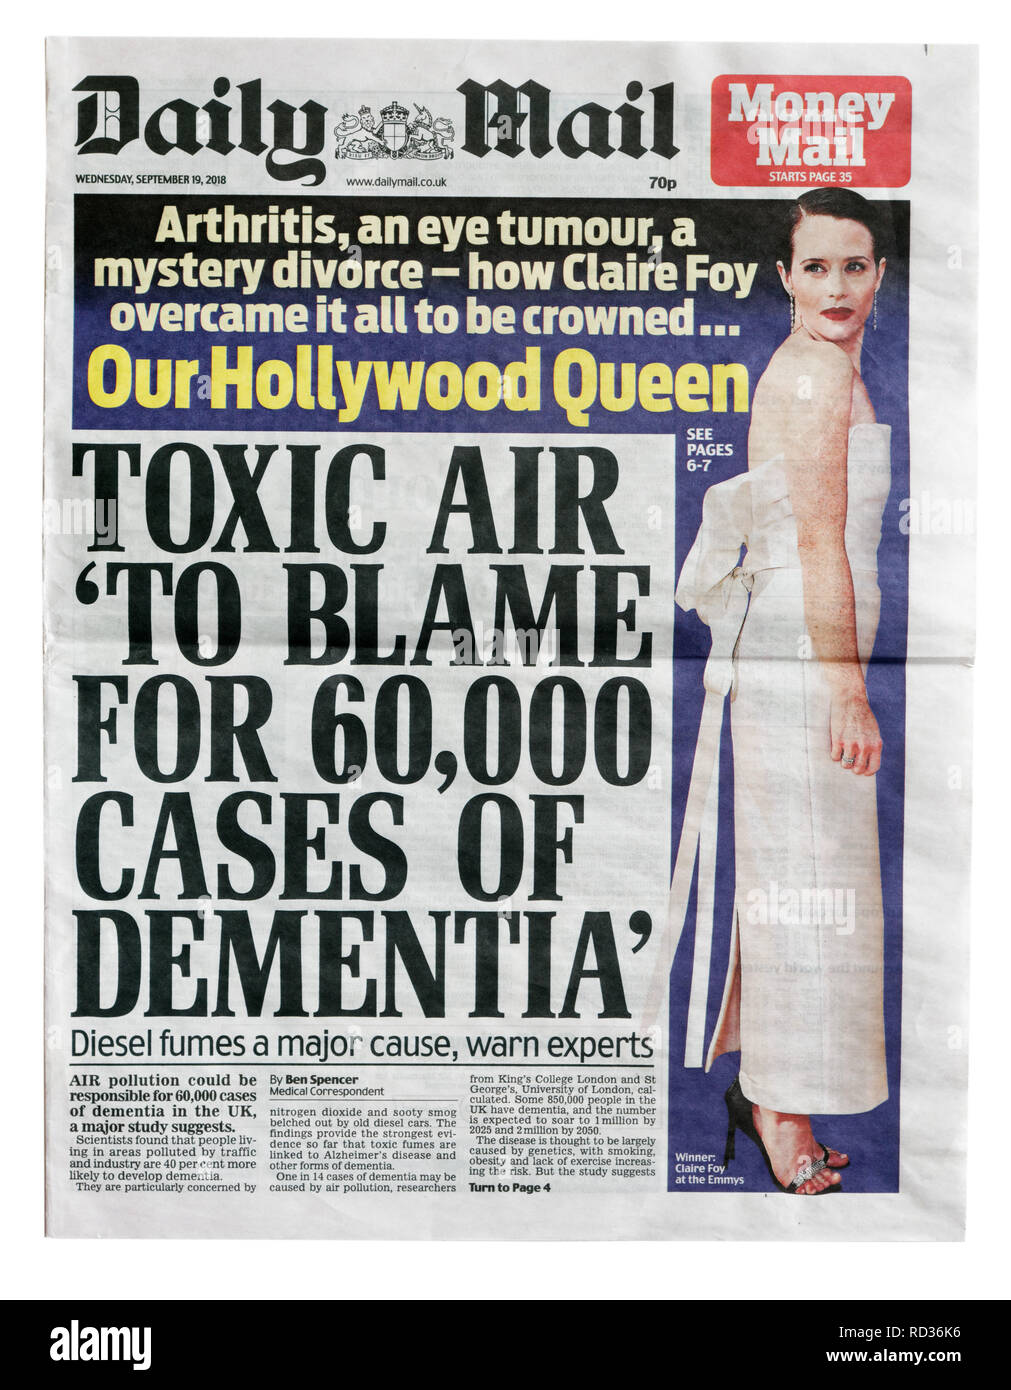 La portada del Daily Mail desde el 19 de septiembre de 2108 sobre la contaminación del aire y los gases de diesel están vinculados a demetia Foto de stock